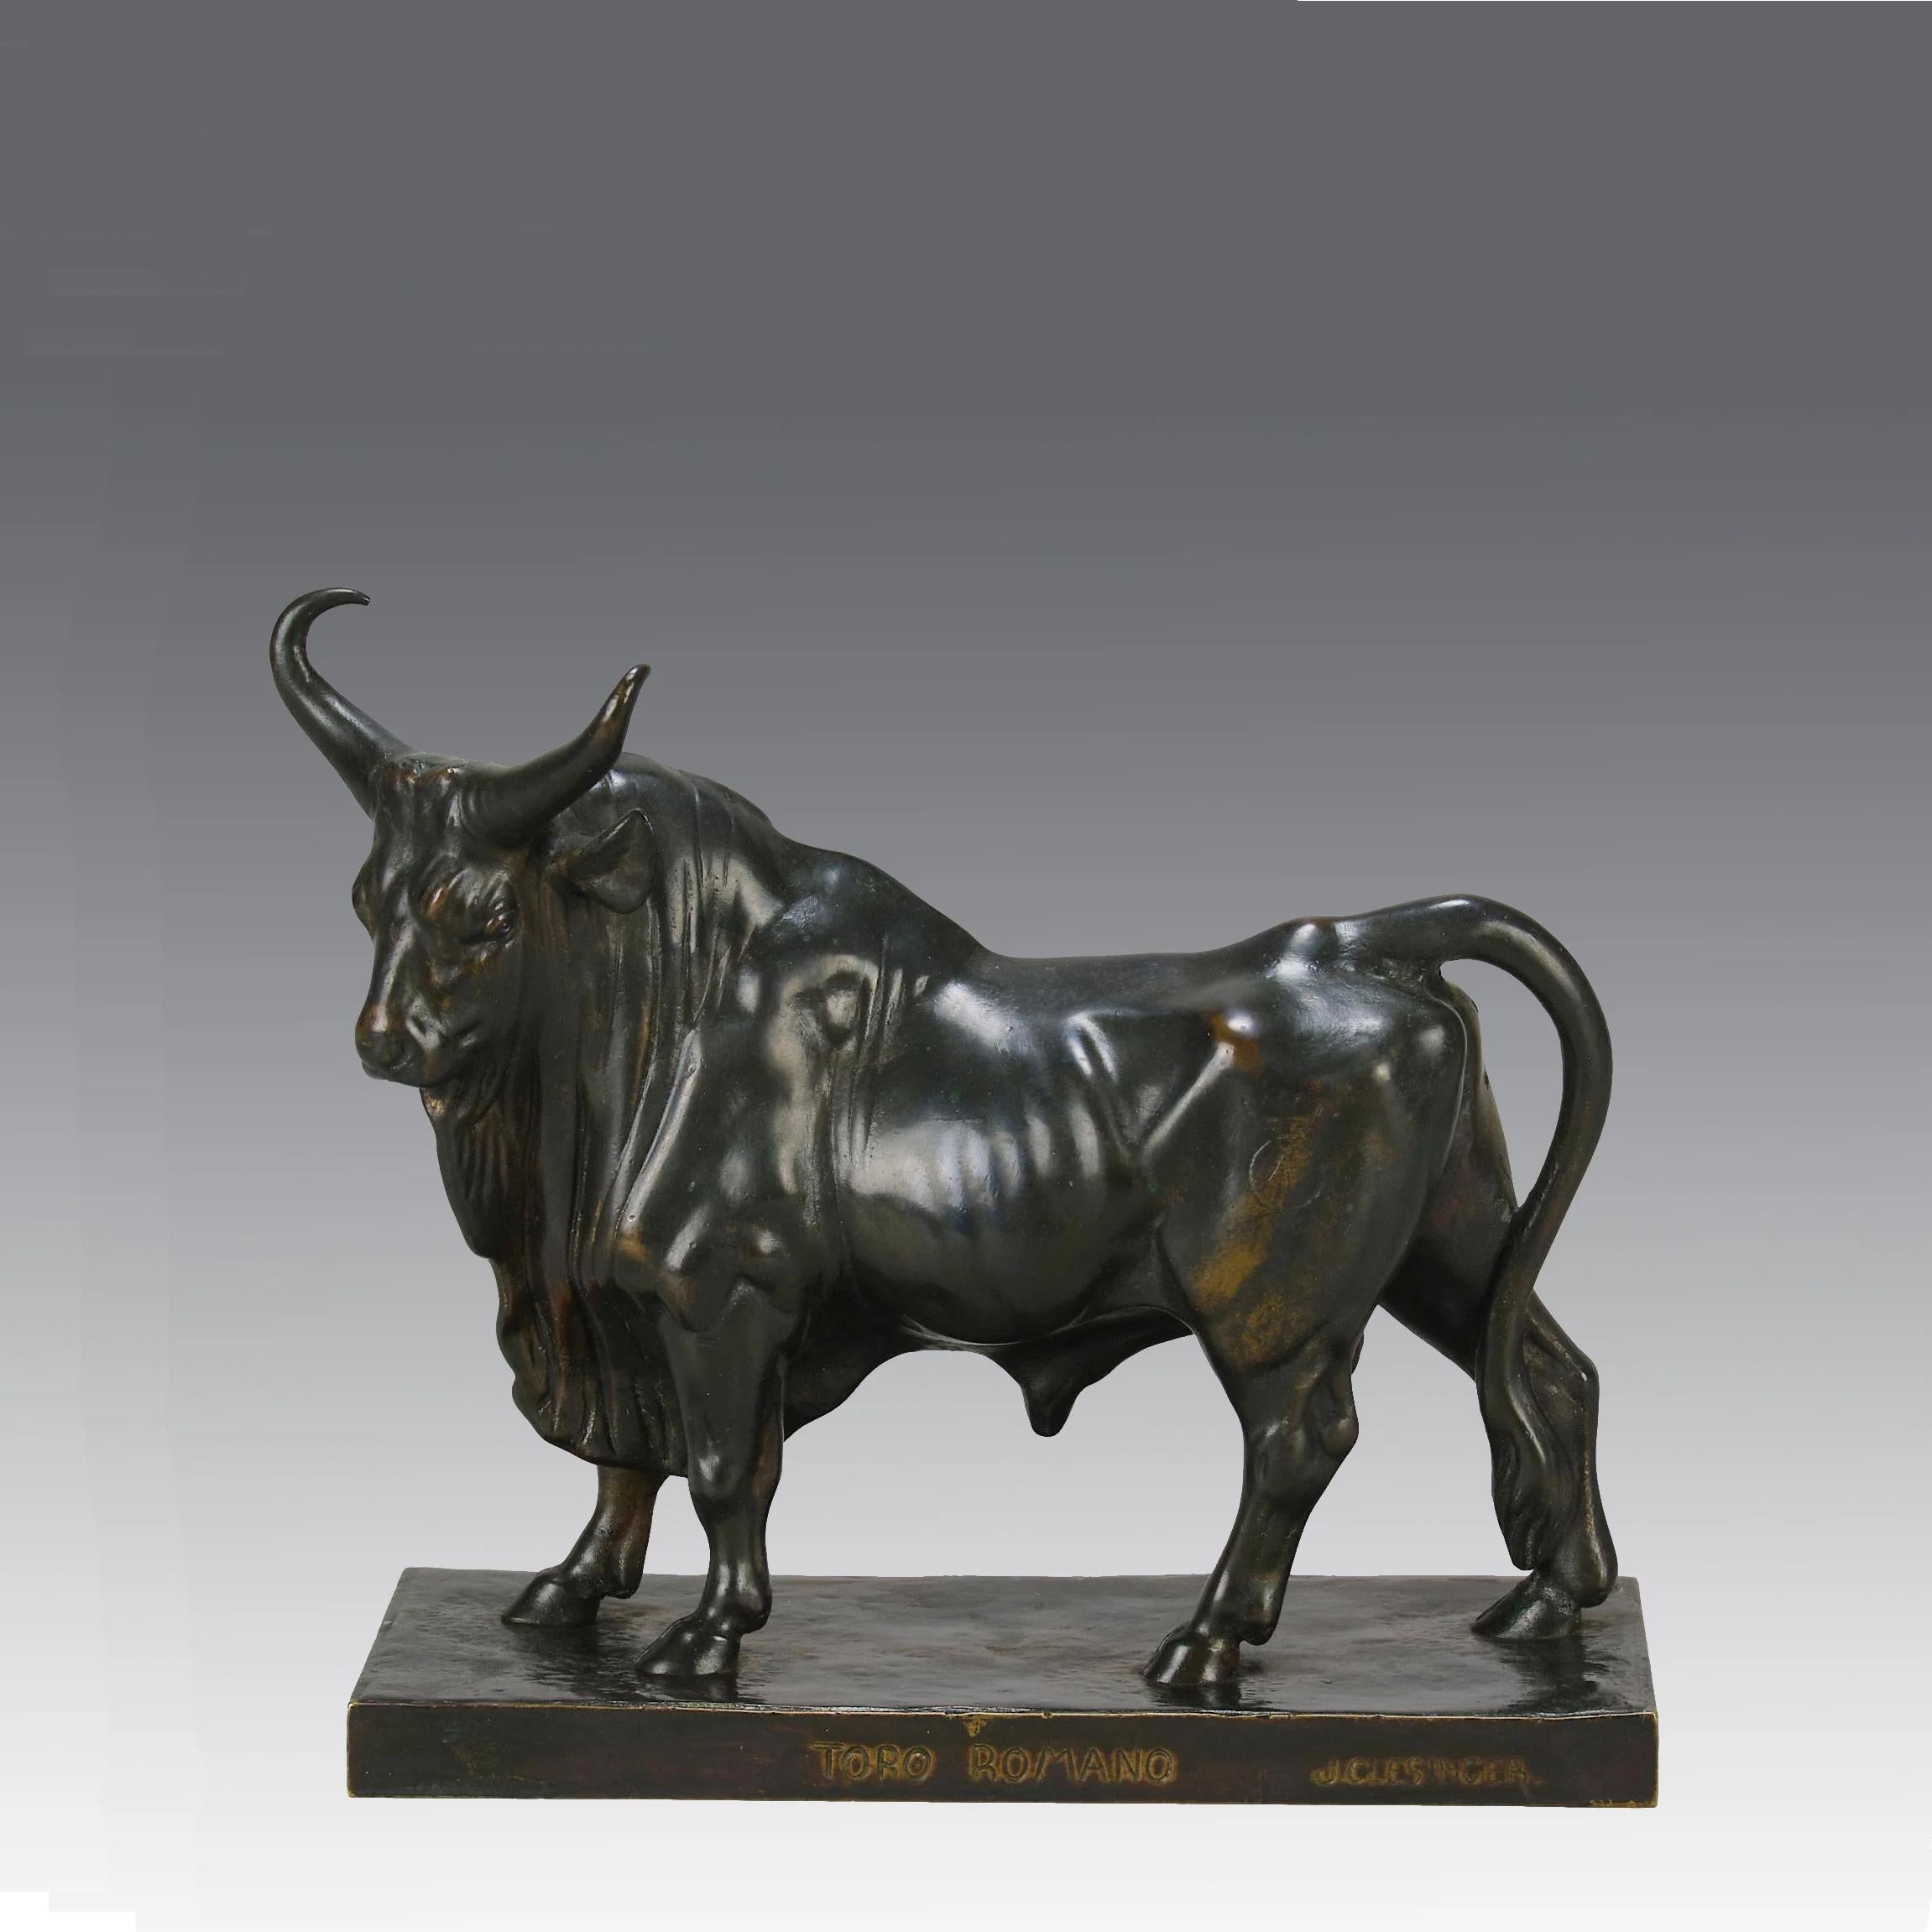 Magnifique étude en bronze de la fin du XIXe siècle représentant un grand taureau dans une attitude fière. Le bronze présente d'excellents détails de surface ciselés à la main et une belle patine brune. Montée sur une base intégrale, signée